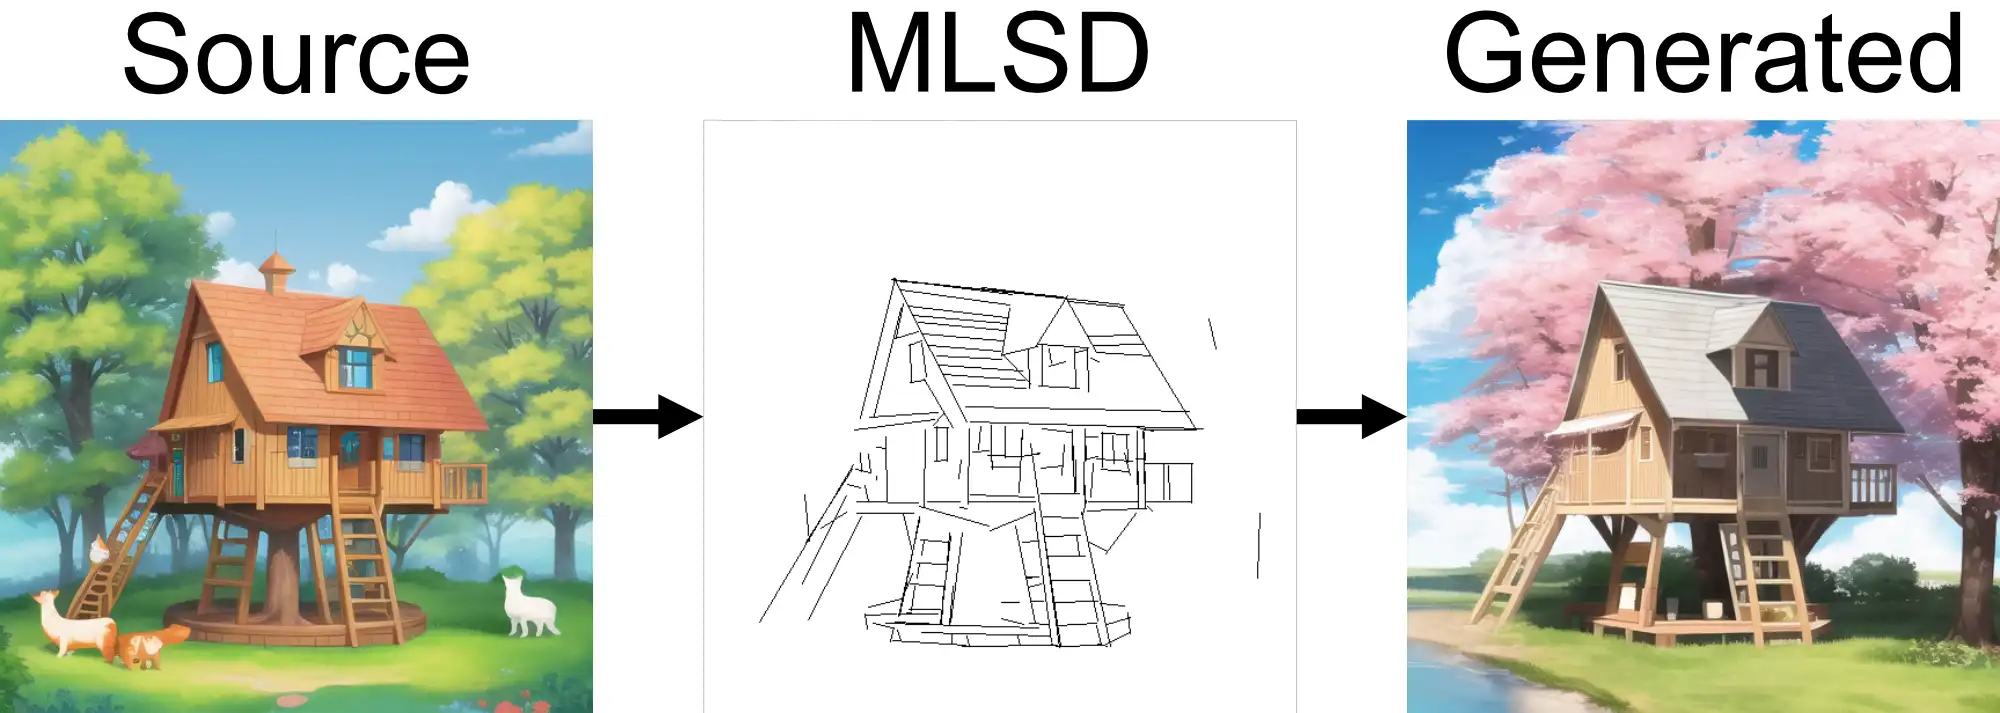 MLSD model